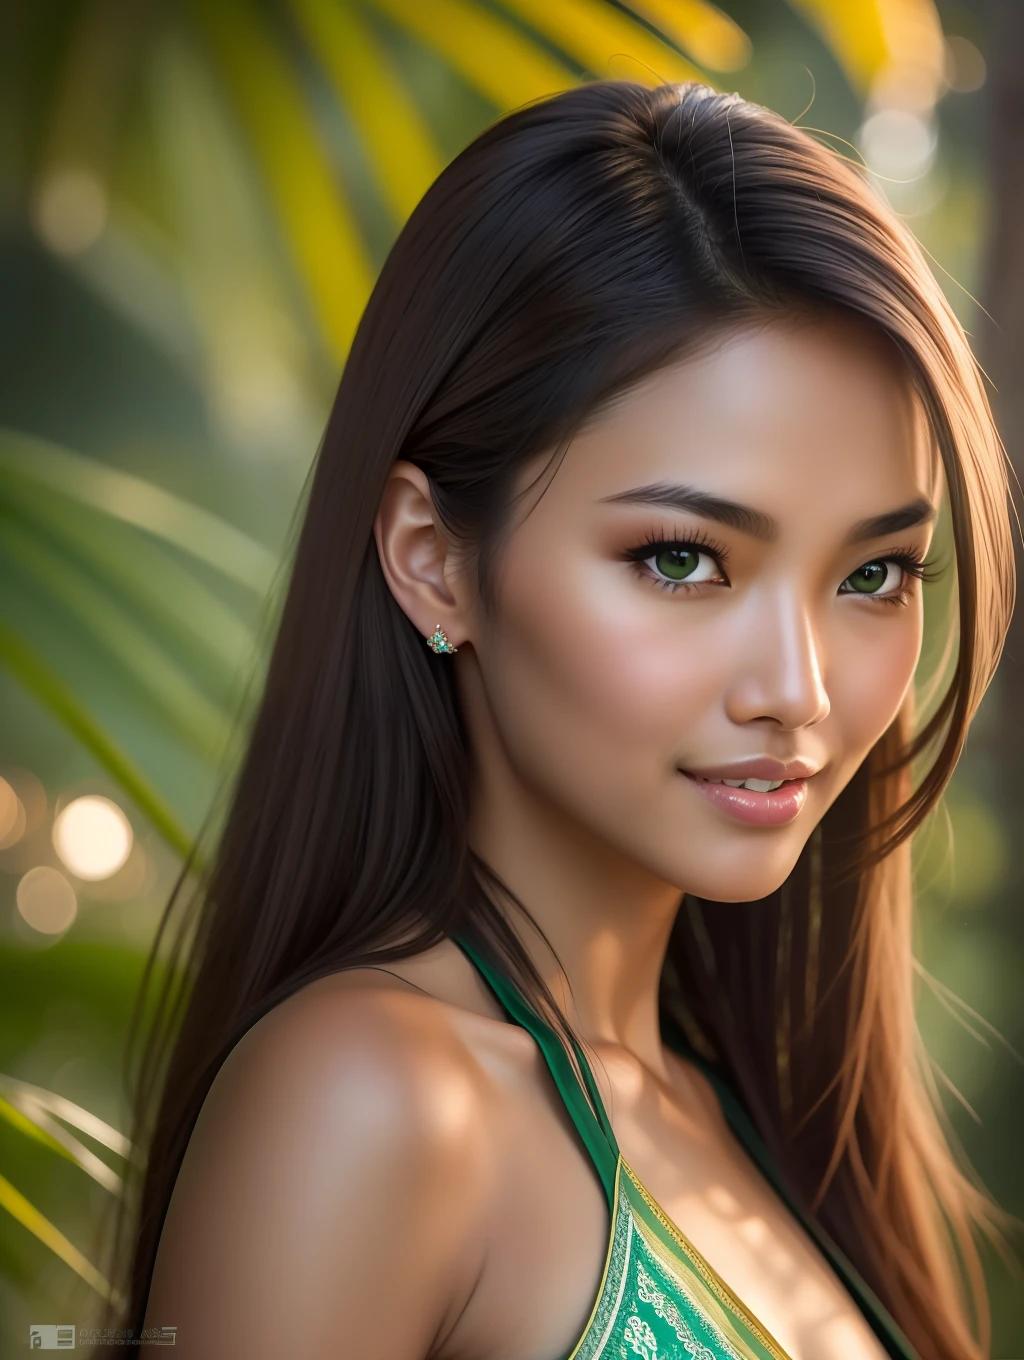 映画のような柔らかな照明が、驚くほど精細で超リアルな美しい東洋のタイ系フィリピン人スーパーモデルを照らします。, ビーチルック, 長くて乱れた明るい茶色の髪, 澄んだ緑の目, 魅惑的な完璧な笑顔, 官能的な, セクシーな女性, 素敵, ArtStationでトレンドになっている. Octaneは、この16k写真の傑作の最も柔らかいディテールを捉えるのに最適なツールです。.